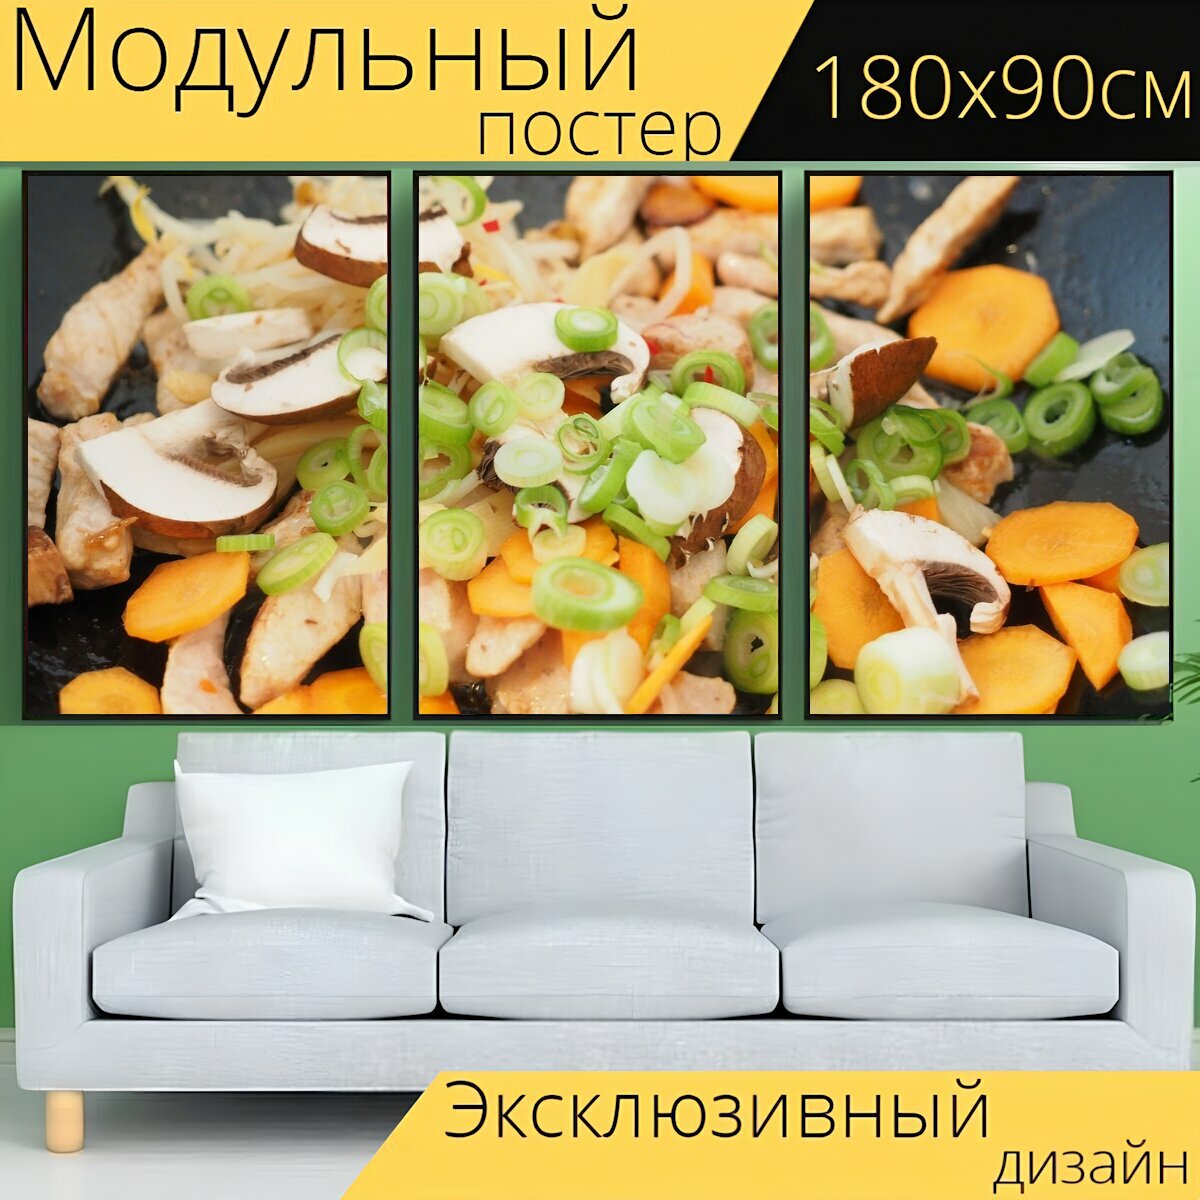 Модульный постер "Овощи, овощная сковорода, морковь" 180 x 90 см. для интерьера